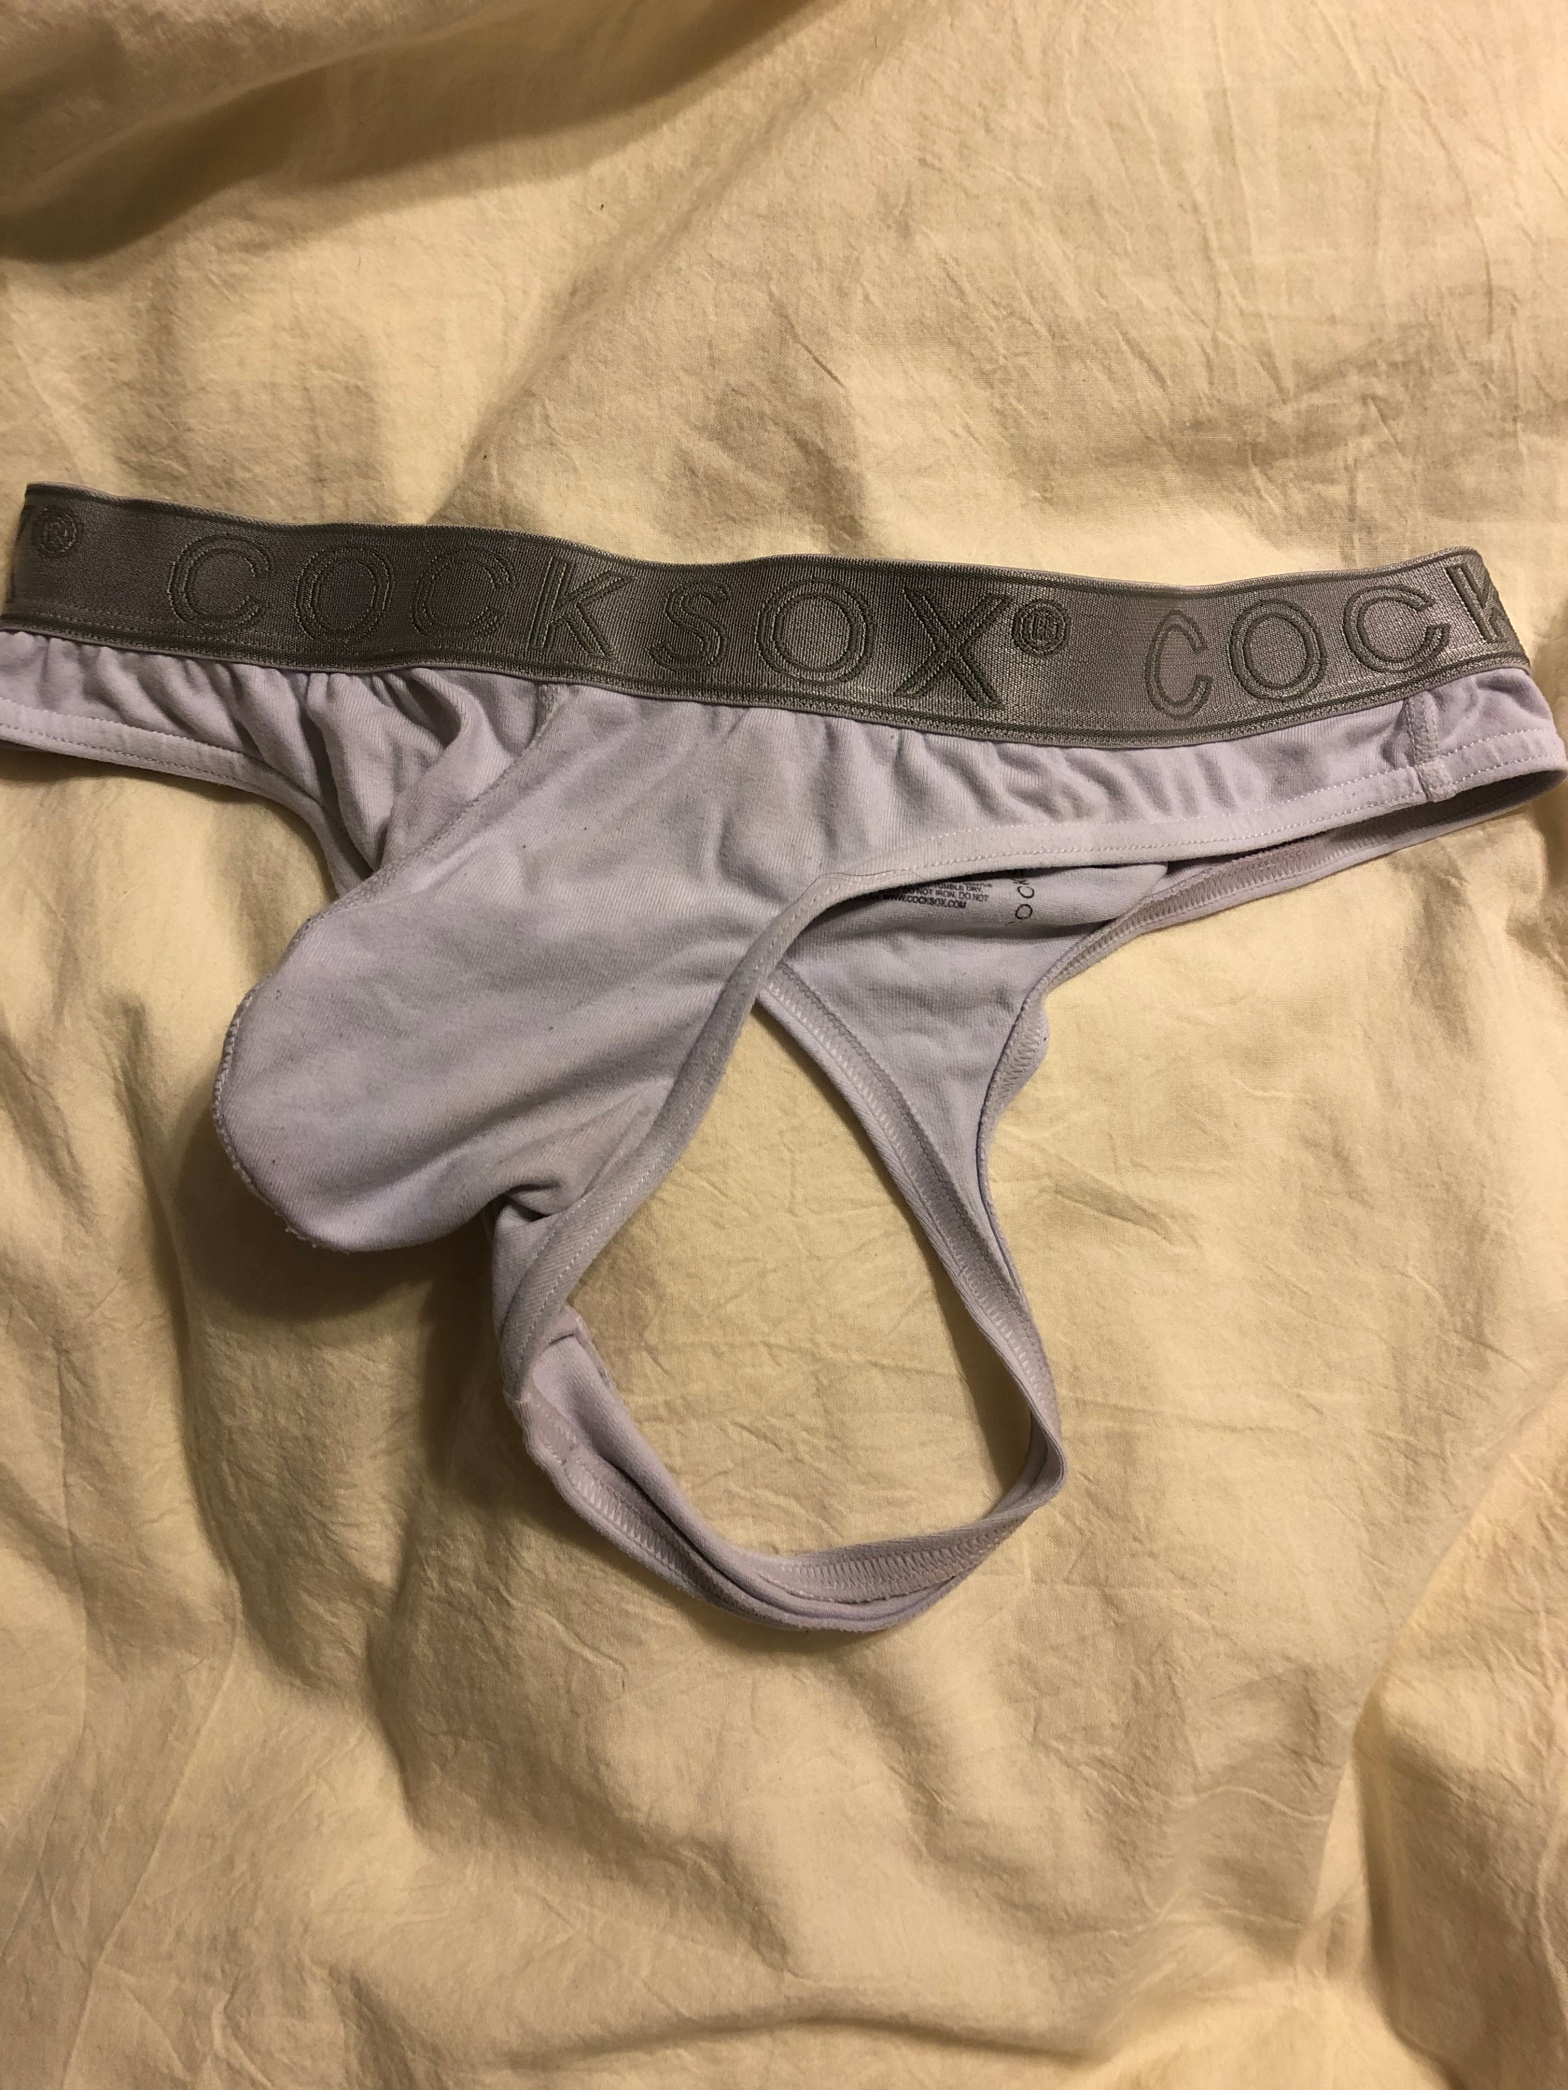 men's thong – An average guys take on underwear